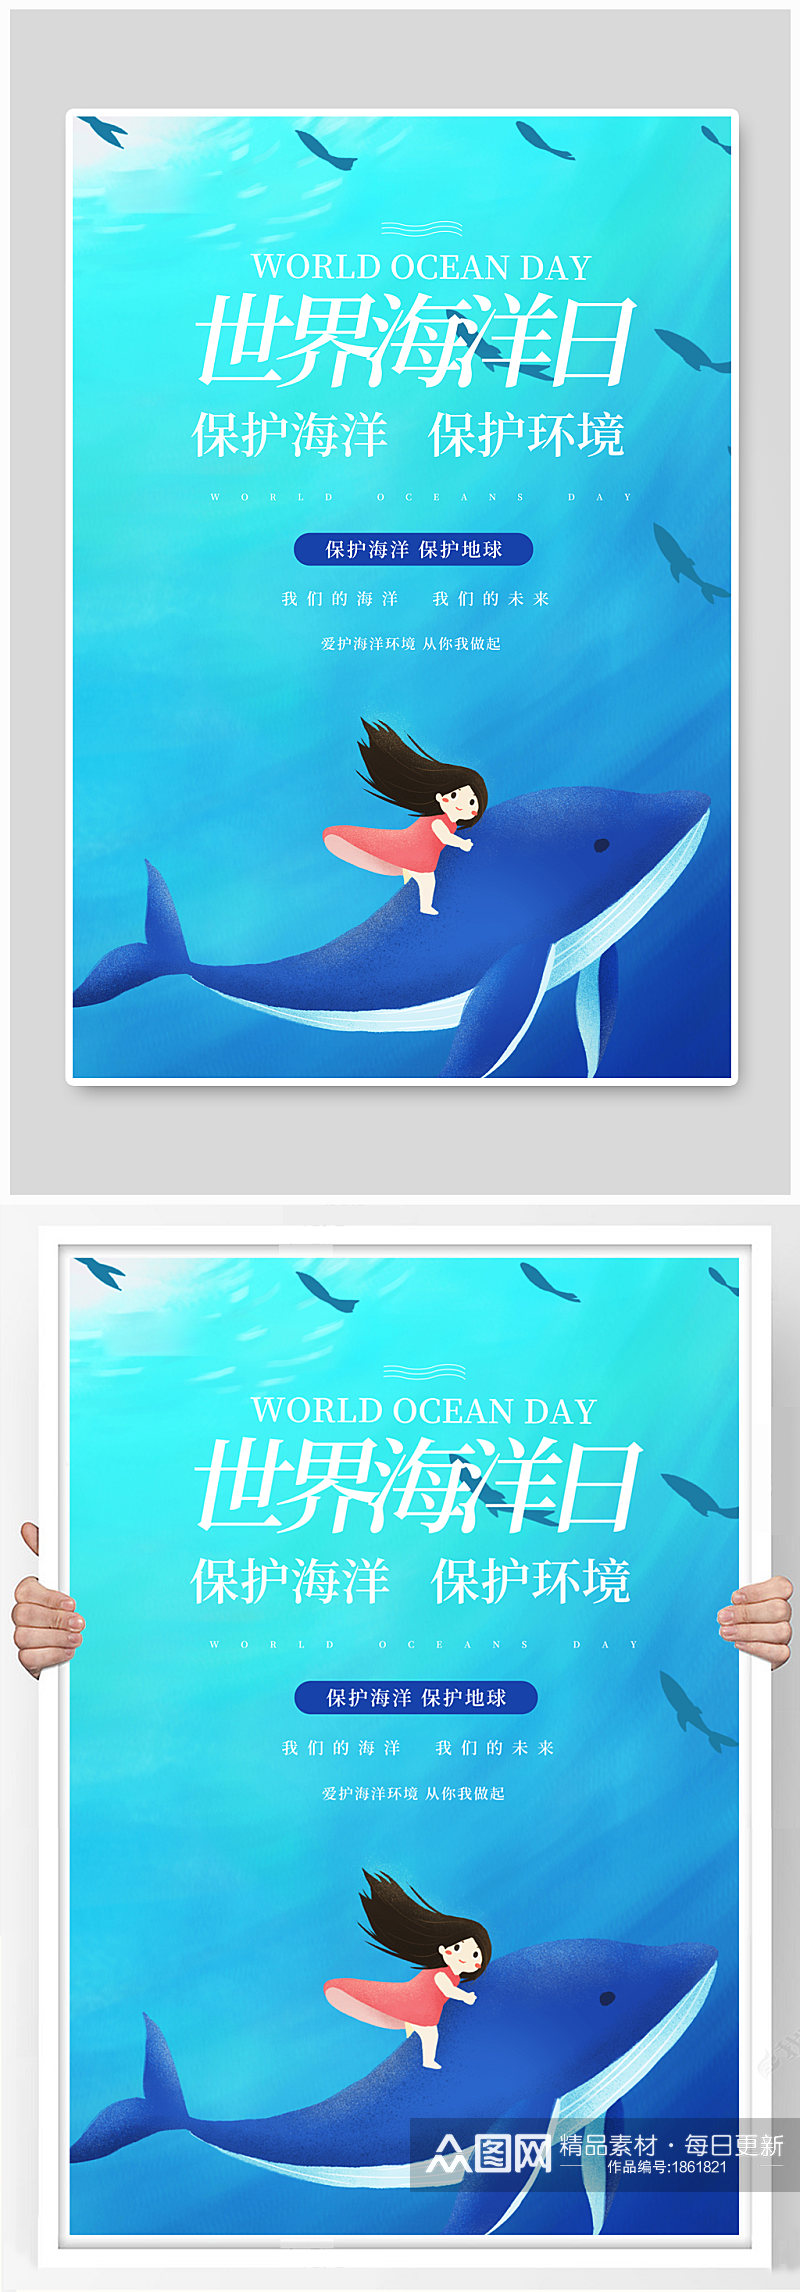 世界海洋日保护海洋海蓝色简约海报素材